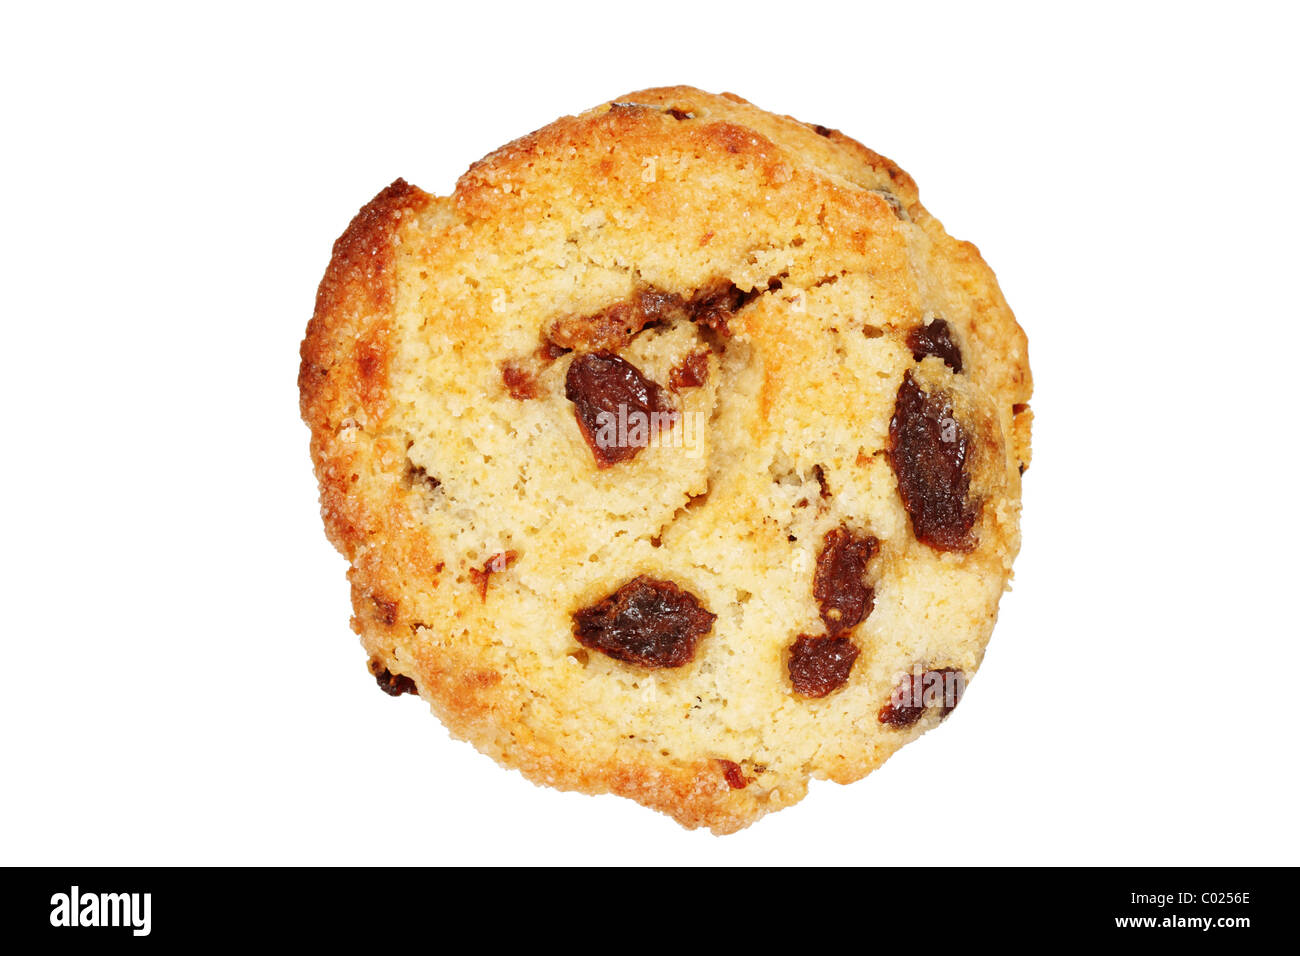 baked raisin scone isolated on white background Stock Photo